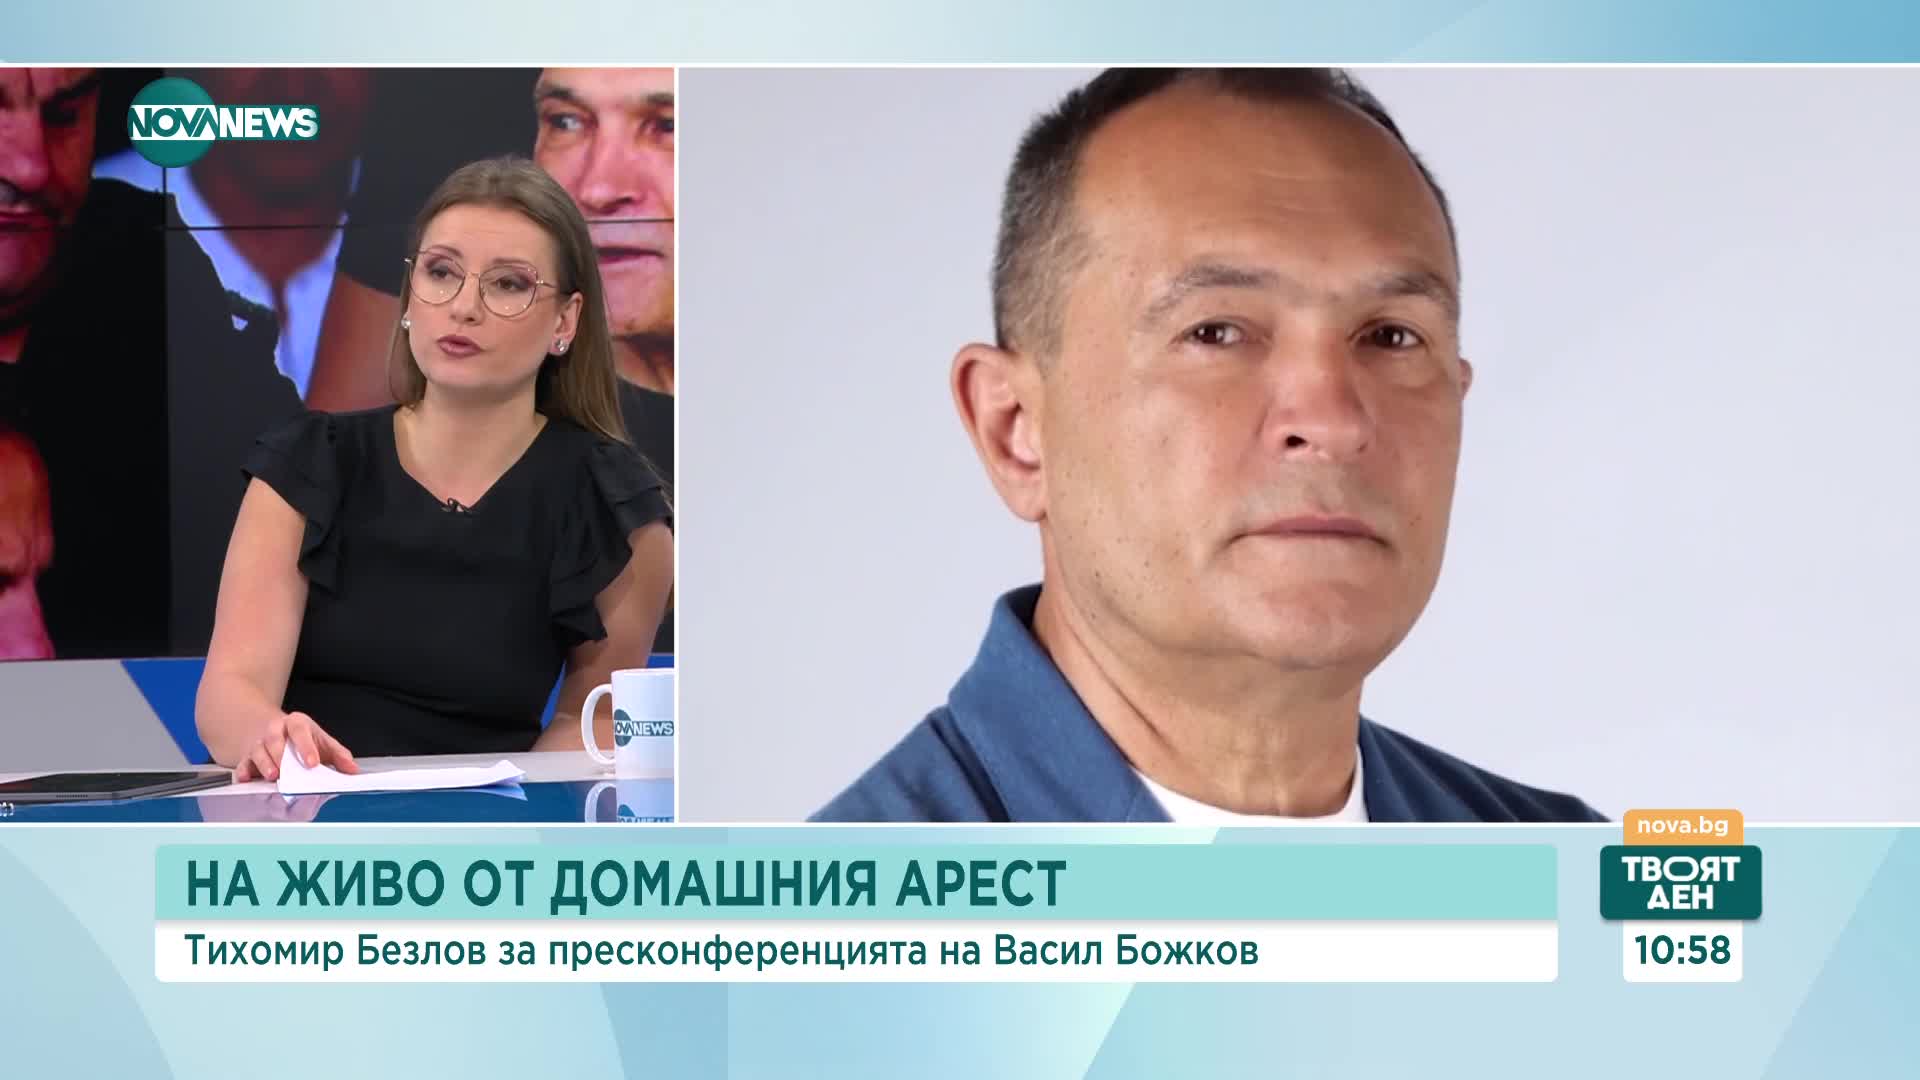 Тихомир Безлов: Божков се връща, защото знае, че няма да бъде осъден